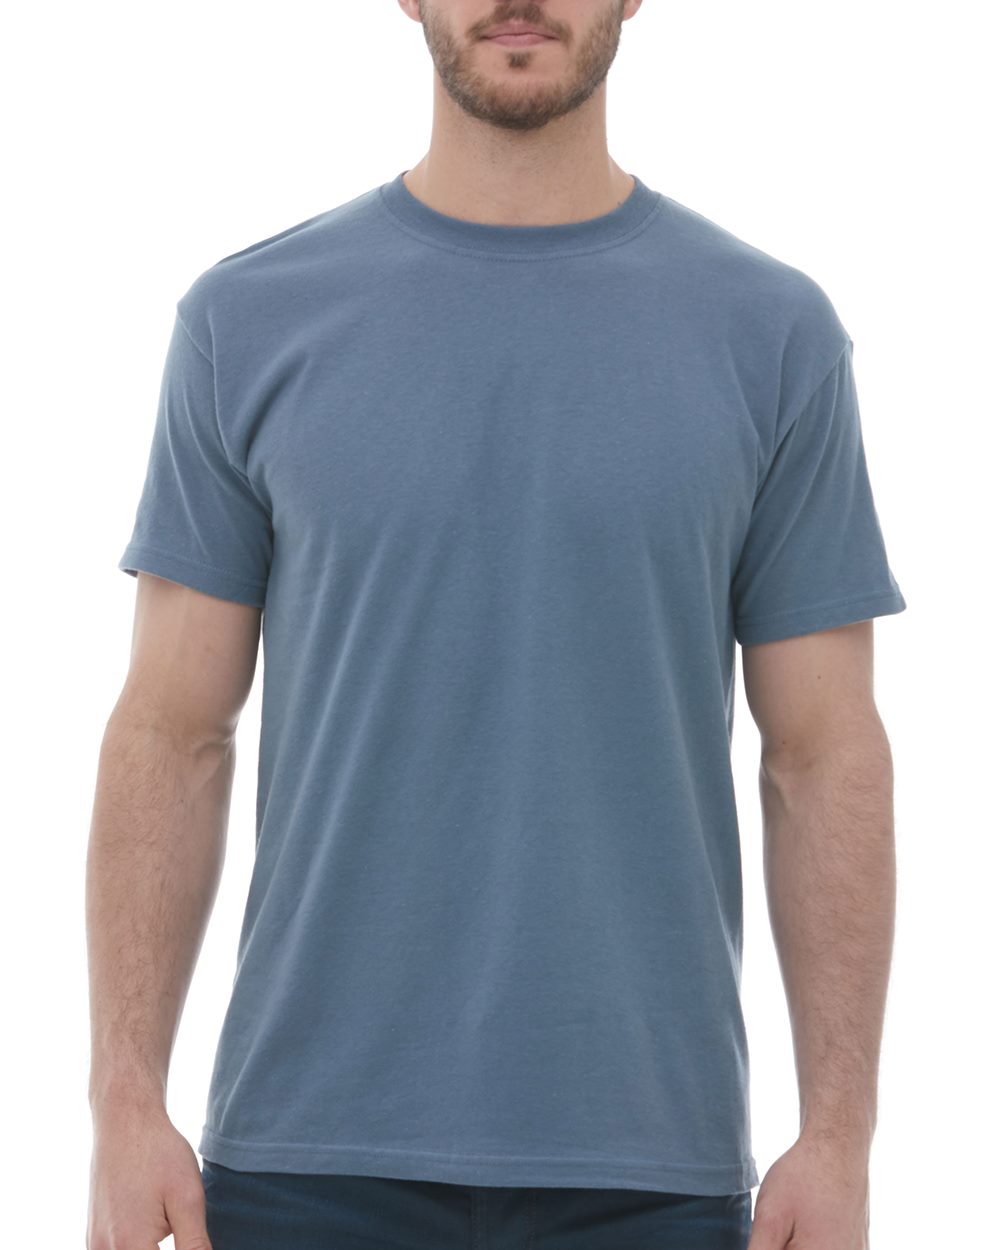 M&O 3520 Poly-Blend Long Sleeve T-shirt 